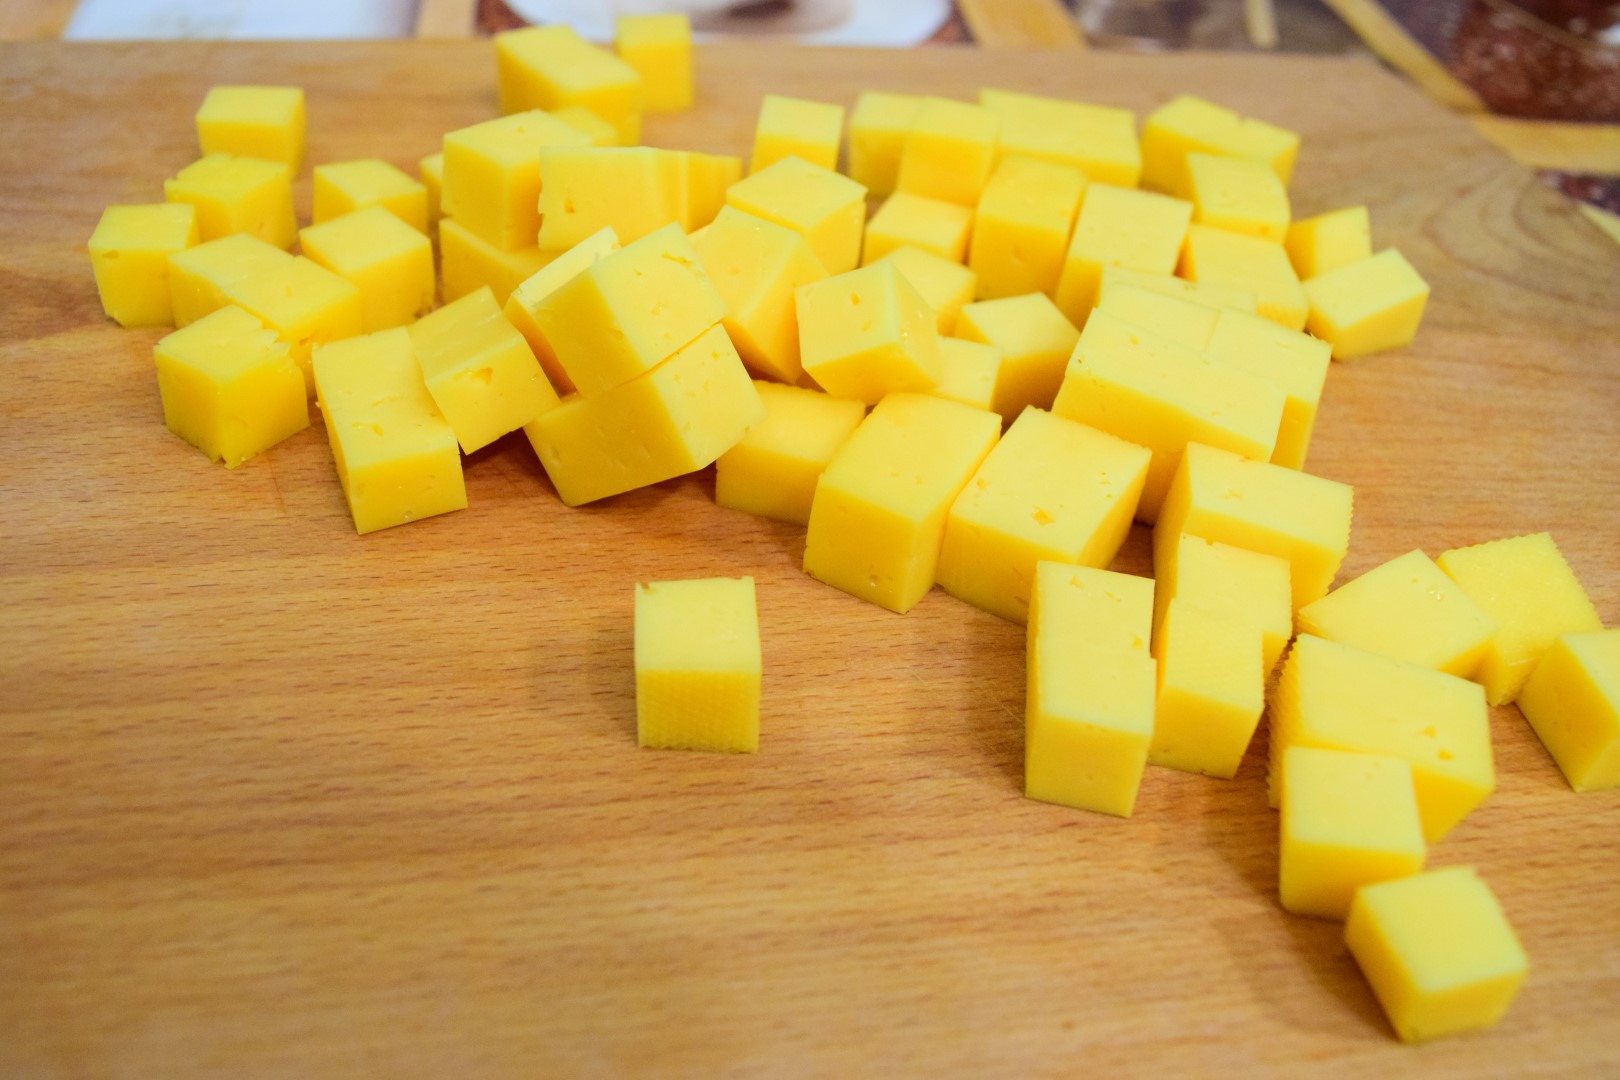 Картофель очистить, нарезать средними кубиками, отварить до готовности, откинуть на сито.